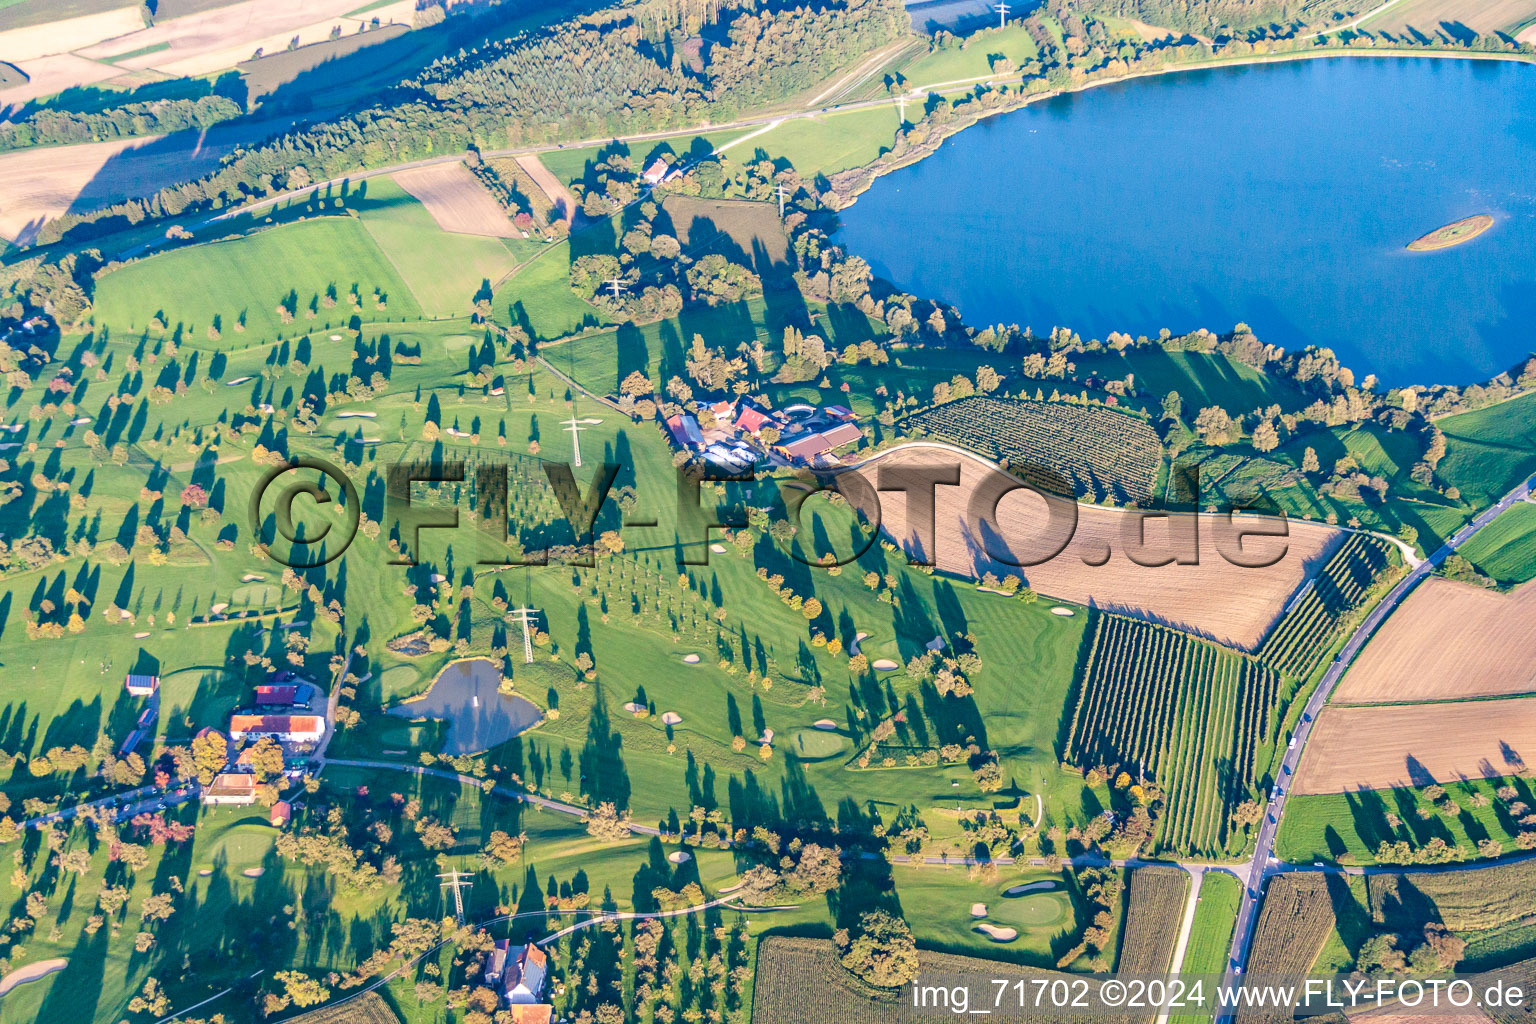 Vue aérienne de Superficie du parcours de golf Owingen-Überlingen à Owingen dans le département Bade-Wurtemberg, Allemagne